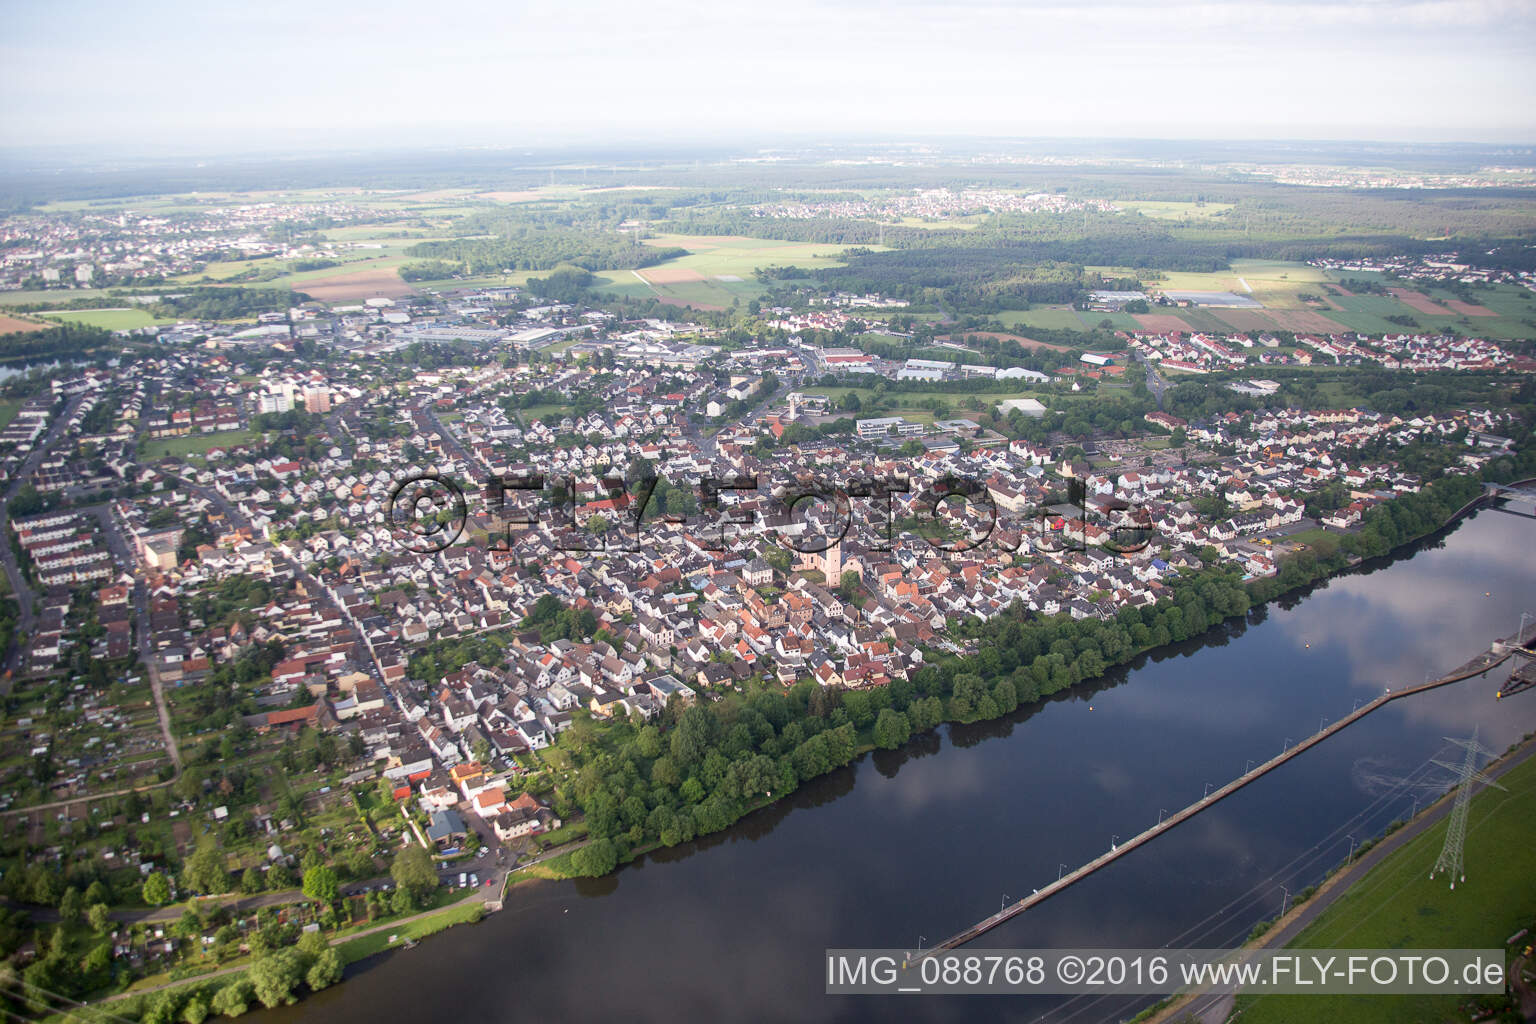 Luftbild von Großkrotzenburg in Klein-Krotzenburg im Bundesland Hessen, Deutschland